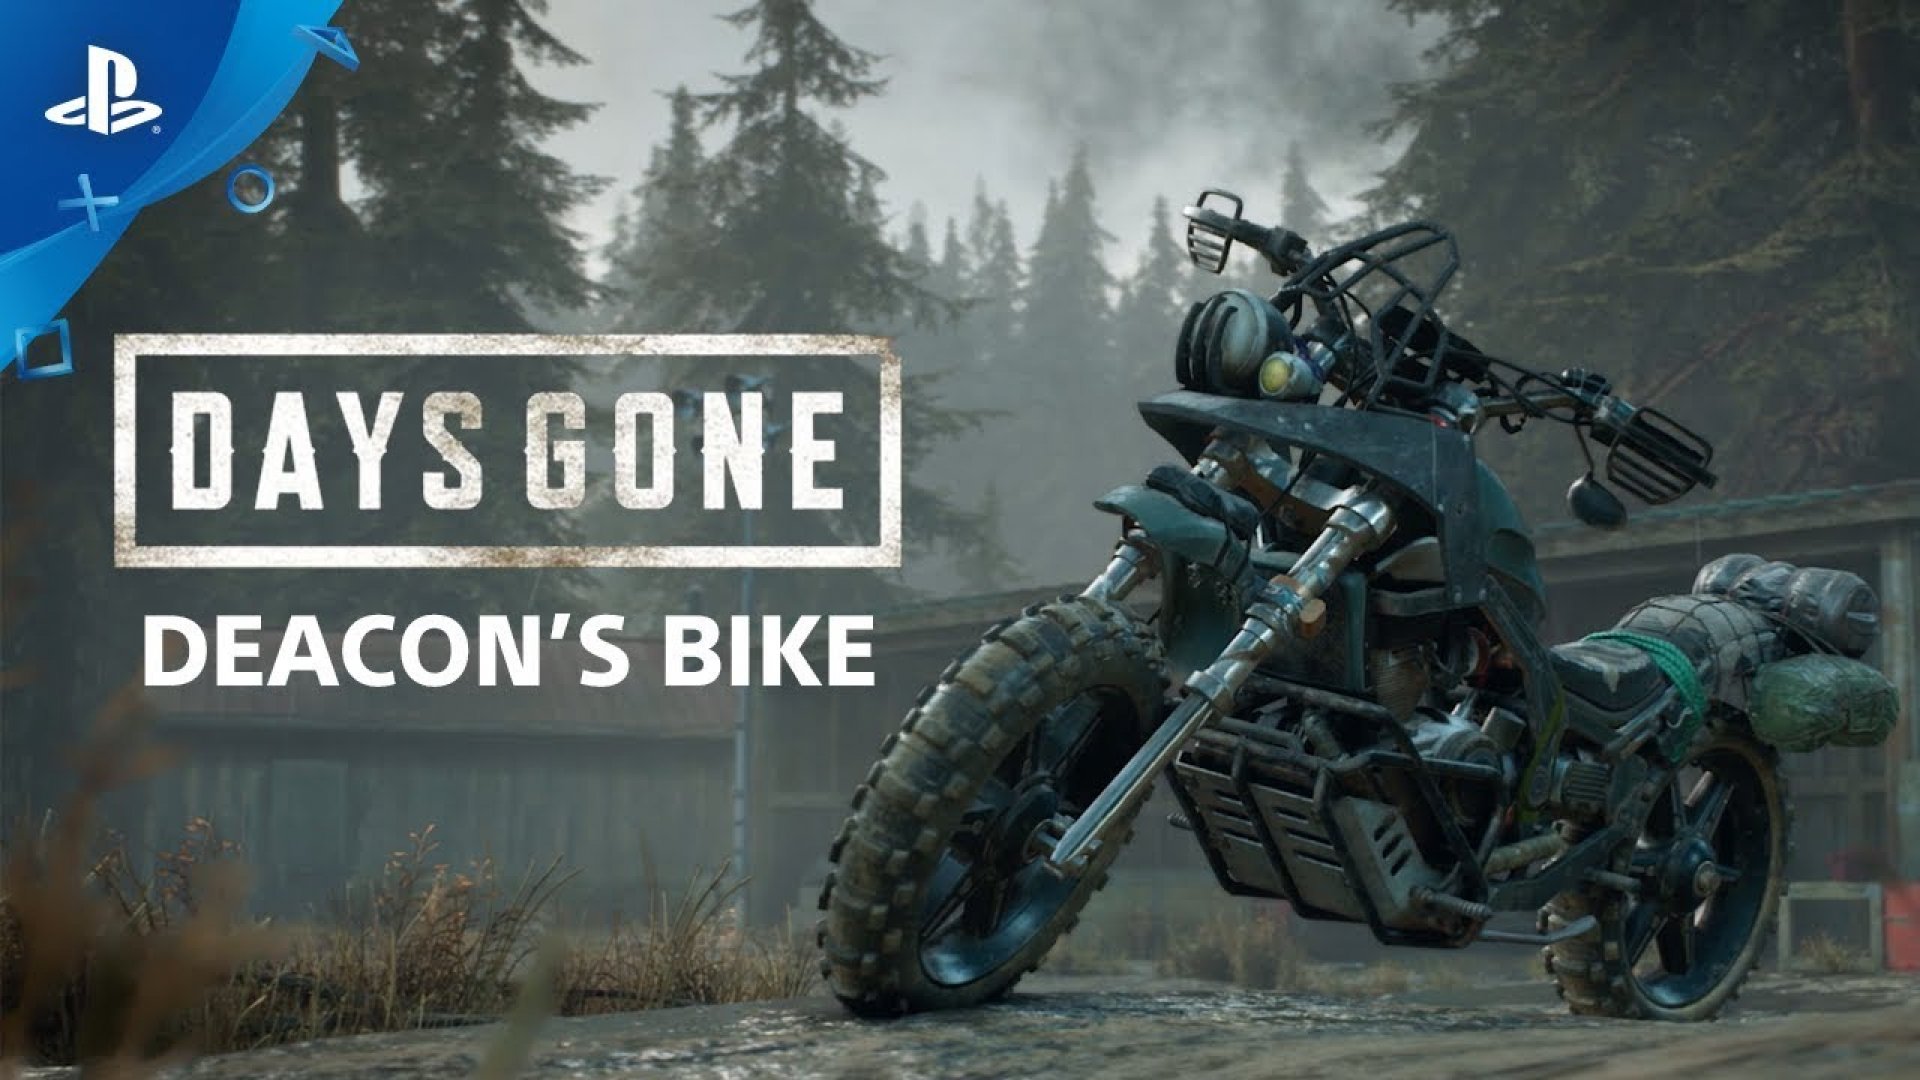 Days gone bike. Мотоцикл из игры Days gone. Days gone байк Дикона. Мотоцикл главного героя Days gone. Мотоцикл Дикона сент Джона.